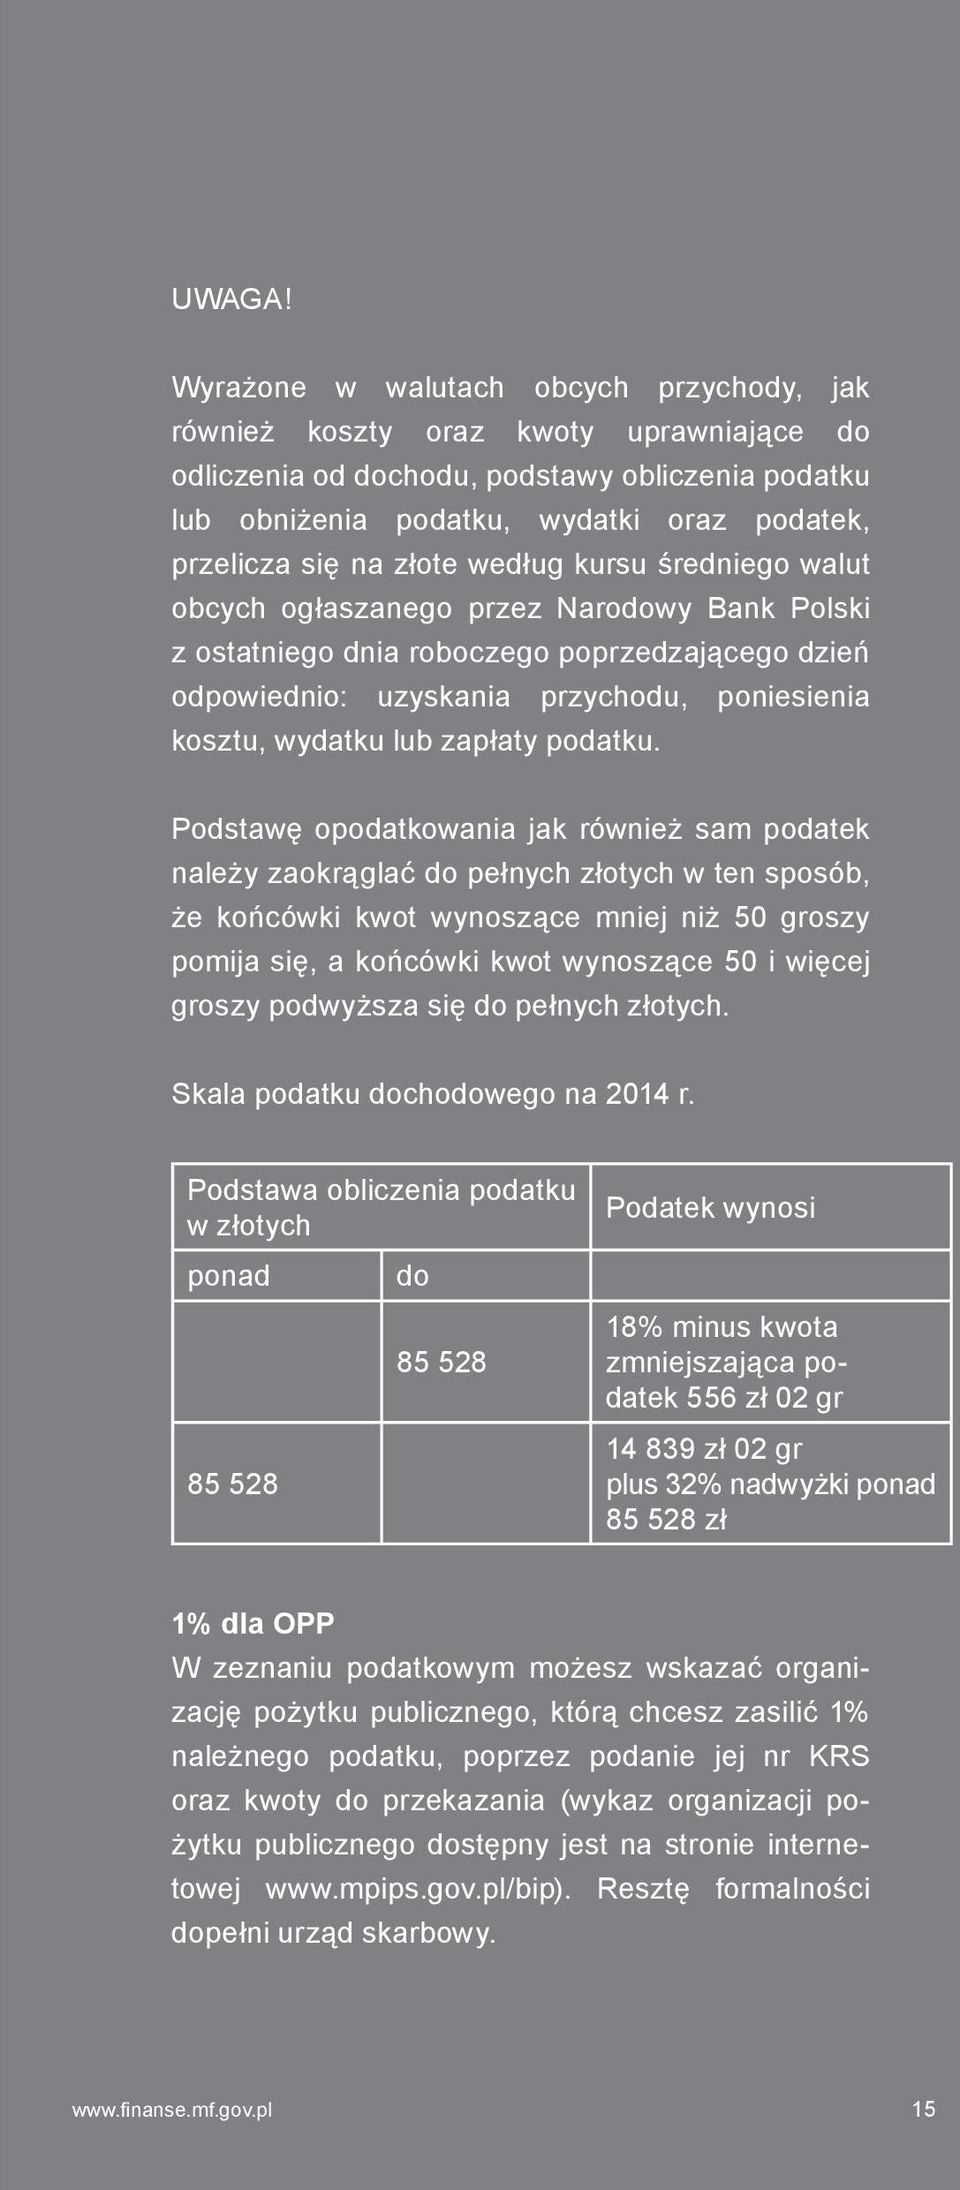 złote według kursu średniego walut obcych ogłaszanego przez Narodowy Bank Polski z ostatniego dnia roboczego poprzedzającego dzień odpowiednio: uzyskania przychodu, poniesienia kosztu, wydatku lub